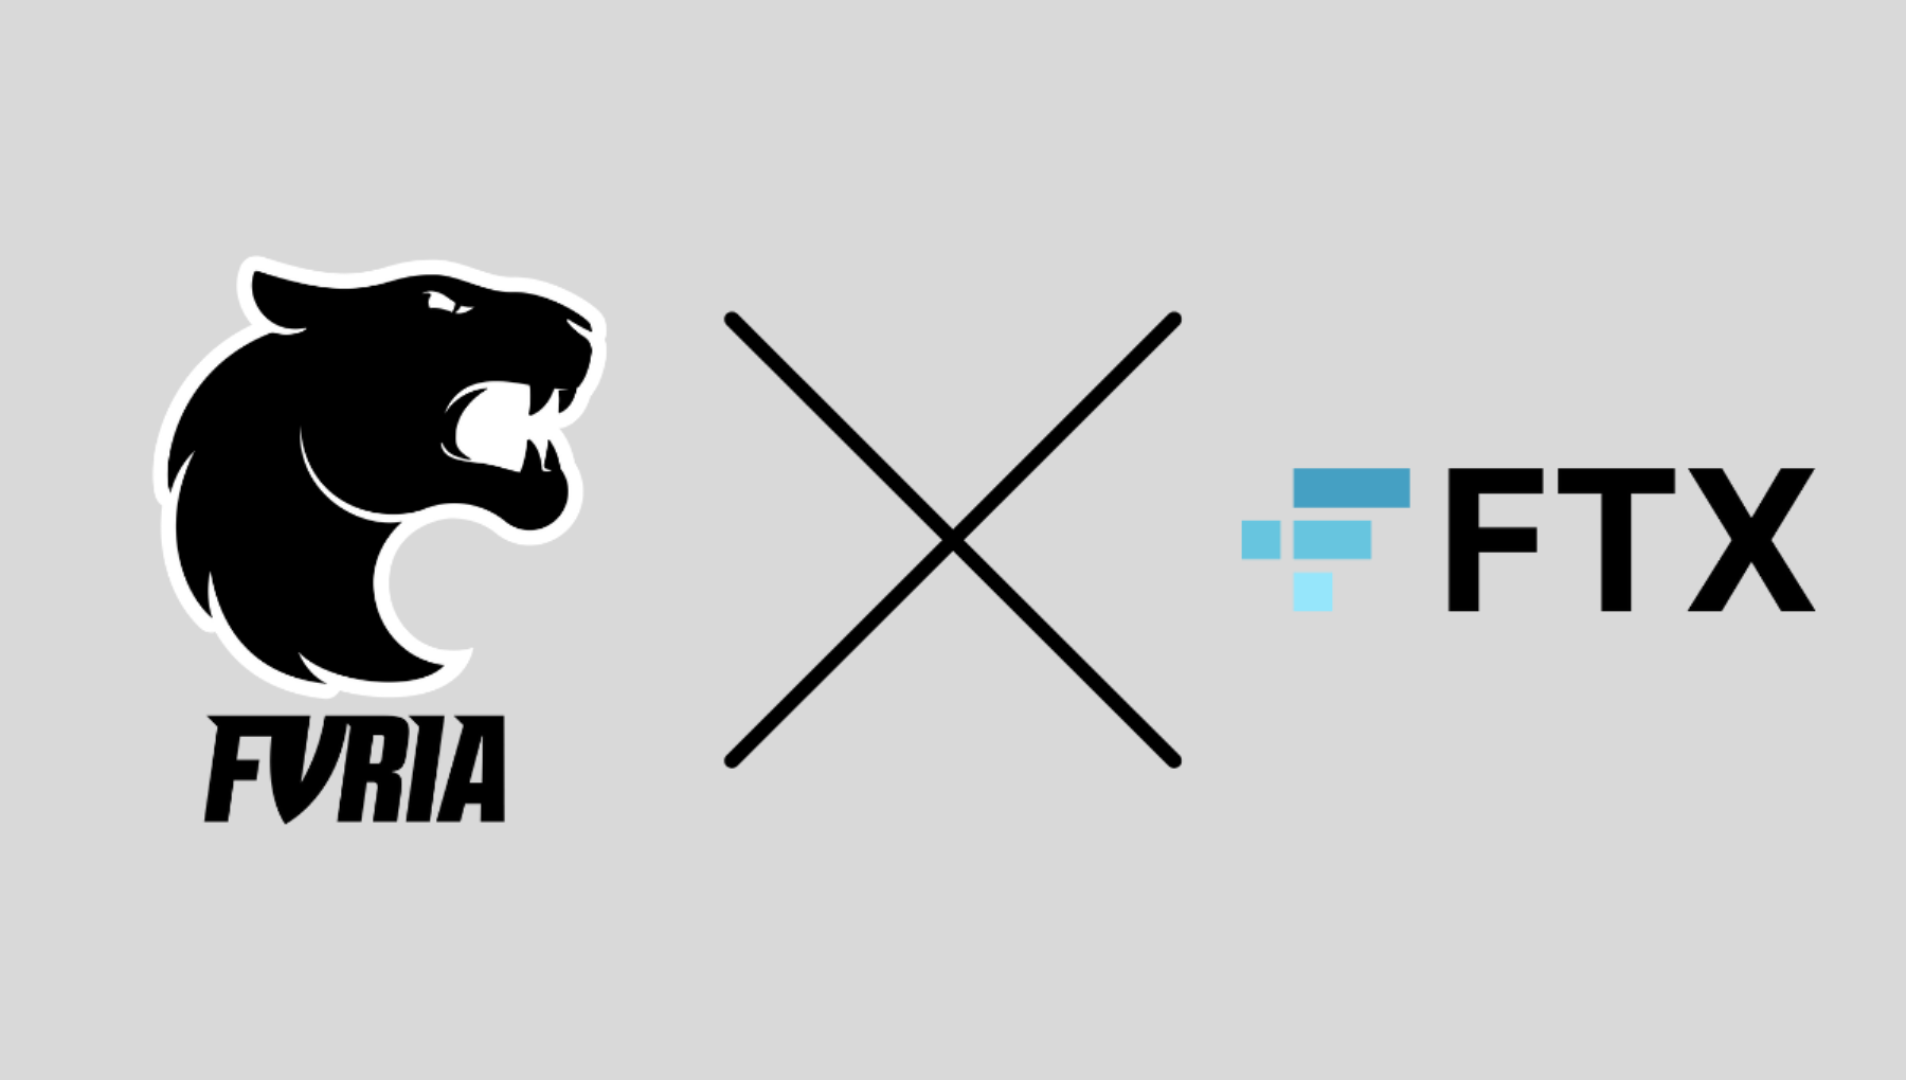 FURIA arbeitet mit FTX zusammen